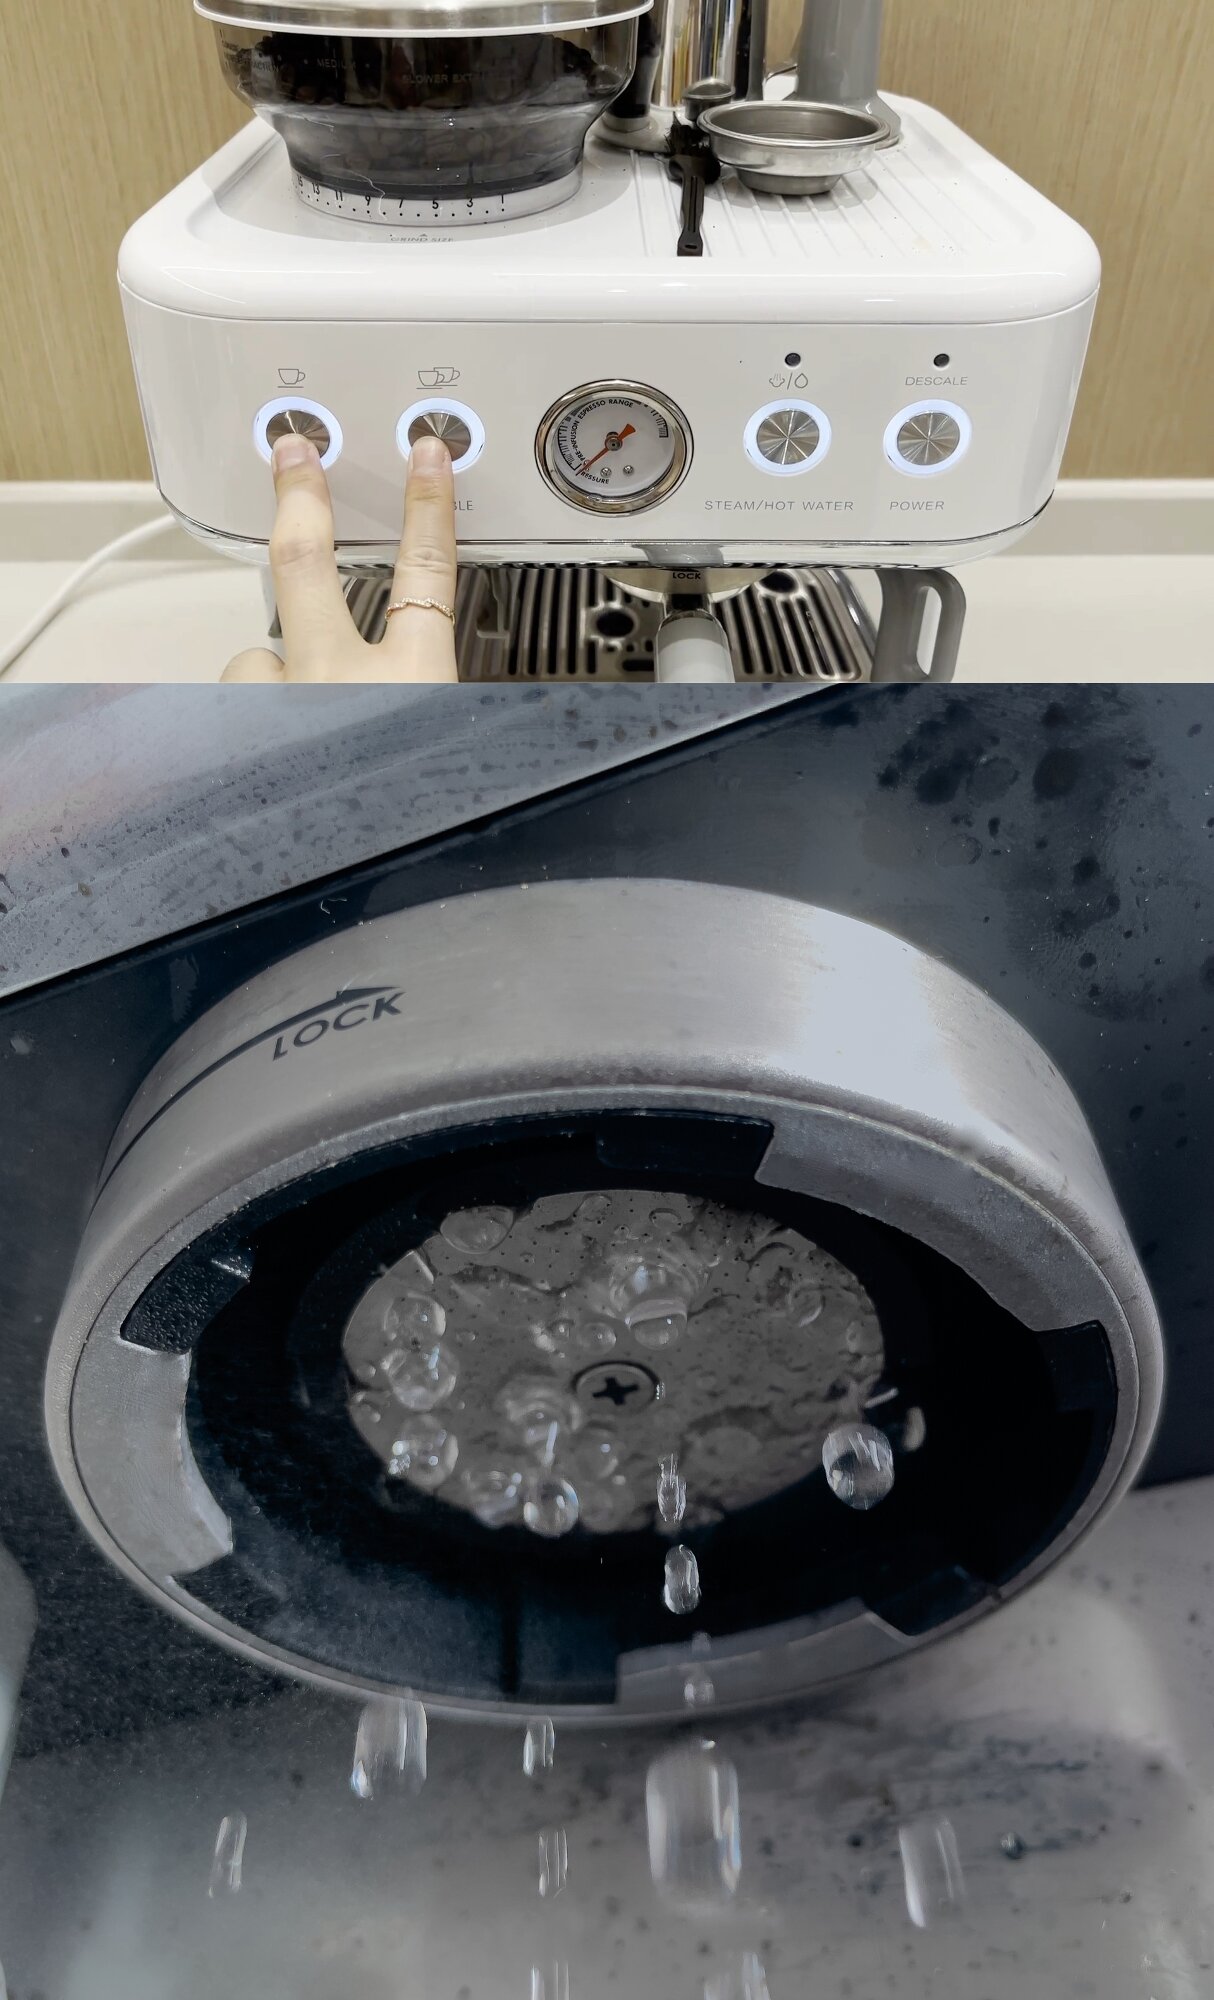 2ボタン同時押しで自動洗浄モードに。給湯口のコーヒー粉を洗い流してくれる